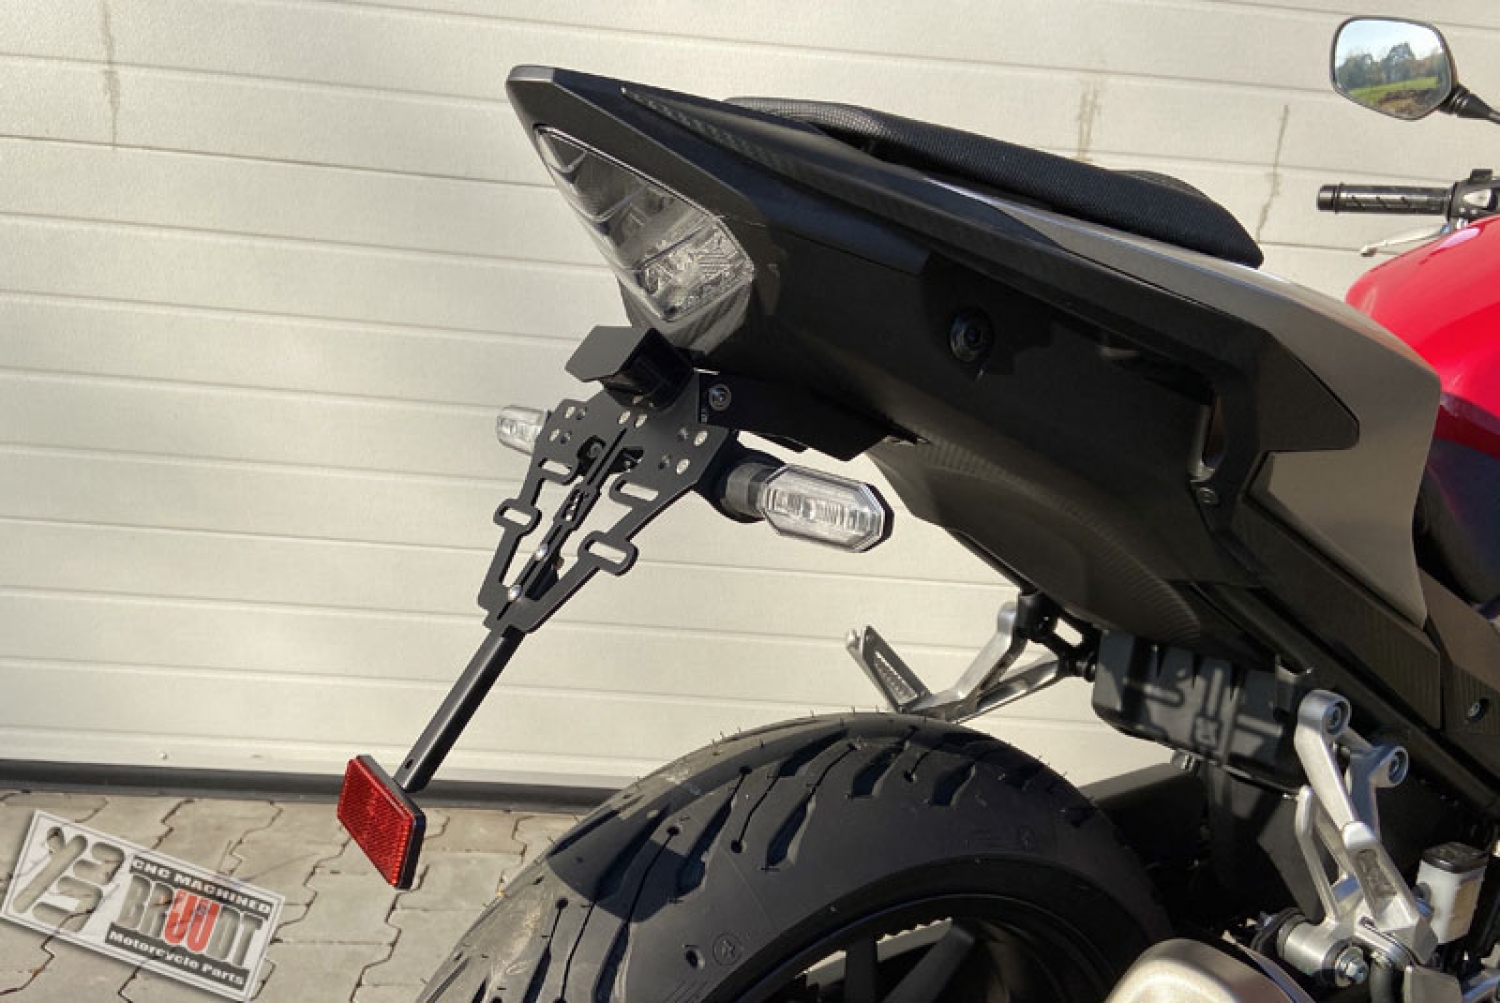 BRUUDT Kennzeichenhalter Tail Tidy für Honda CB500F und CBR500R ab 2016